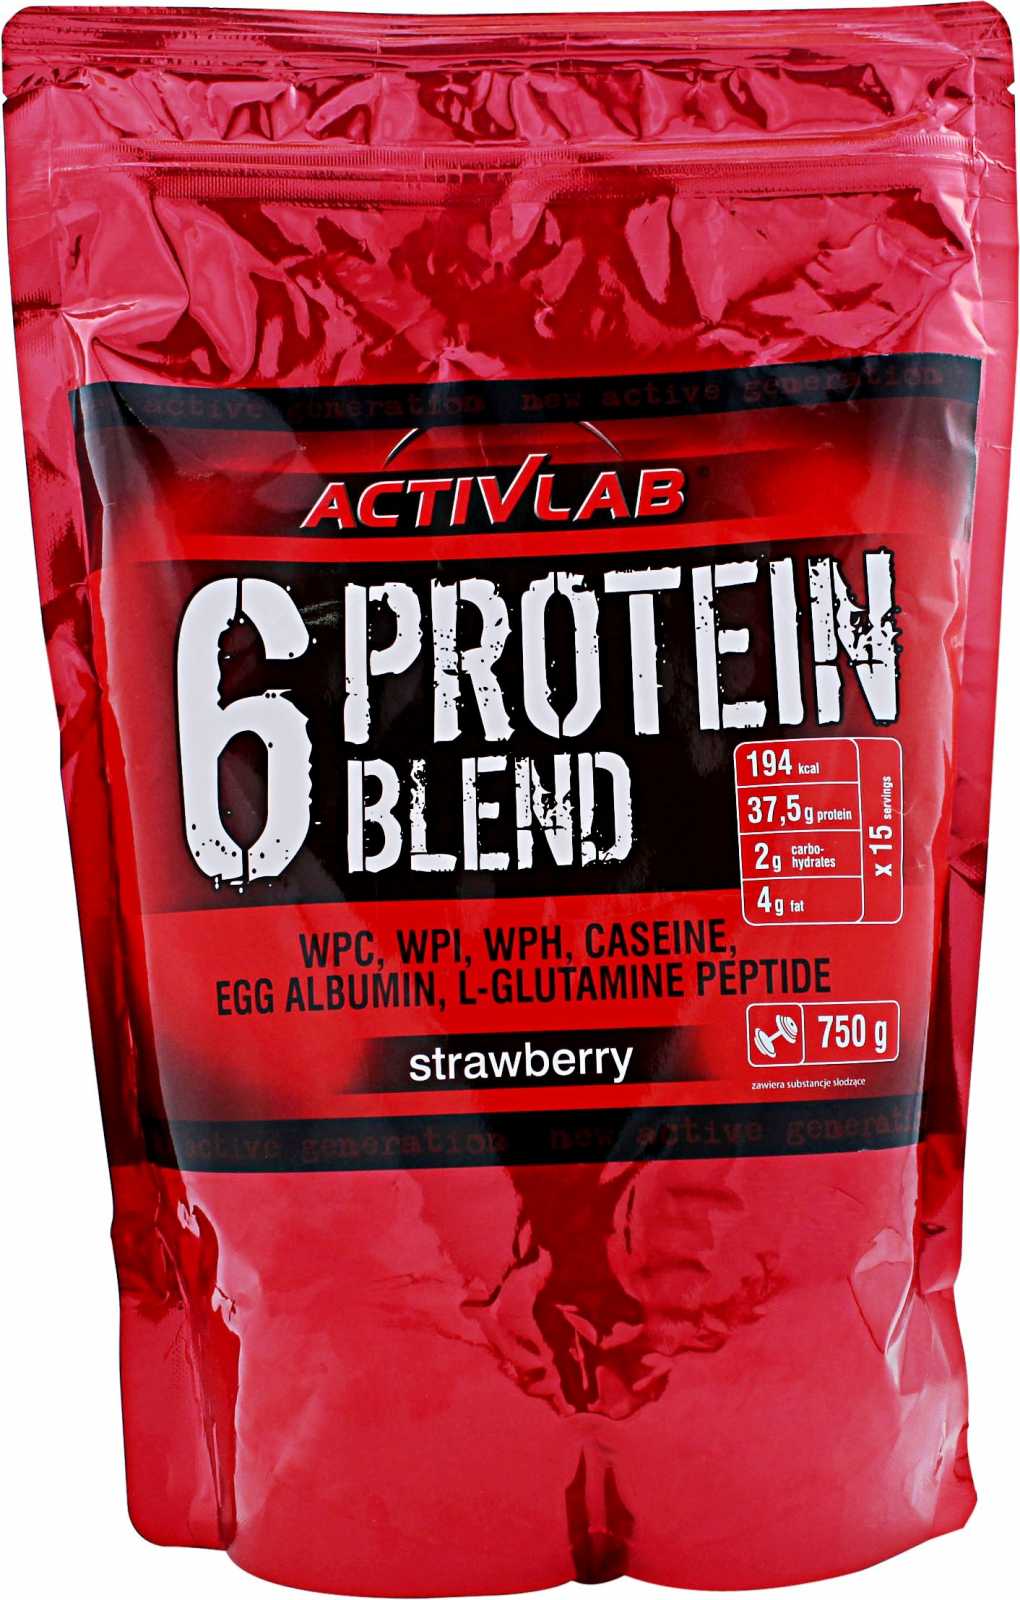 6 Protein Blend, 750 g, ActivLab. Protein Blend. 